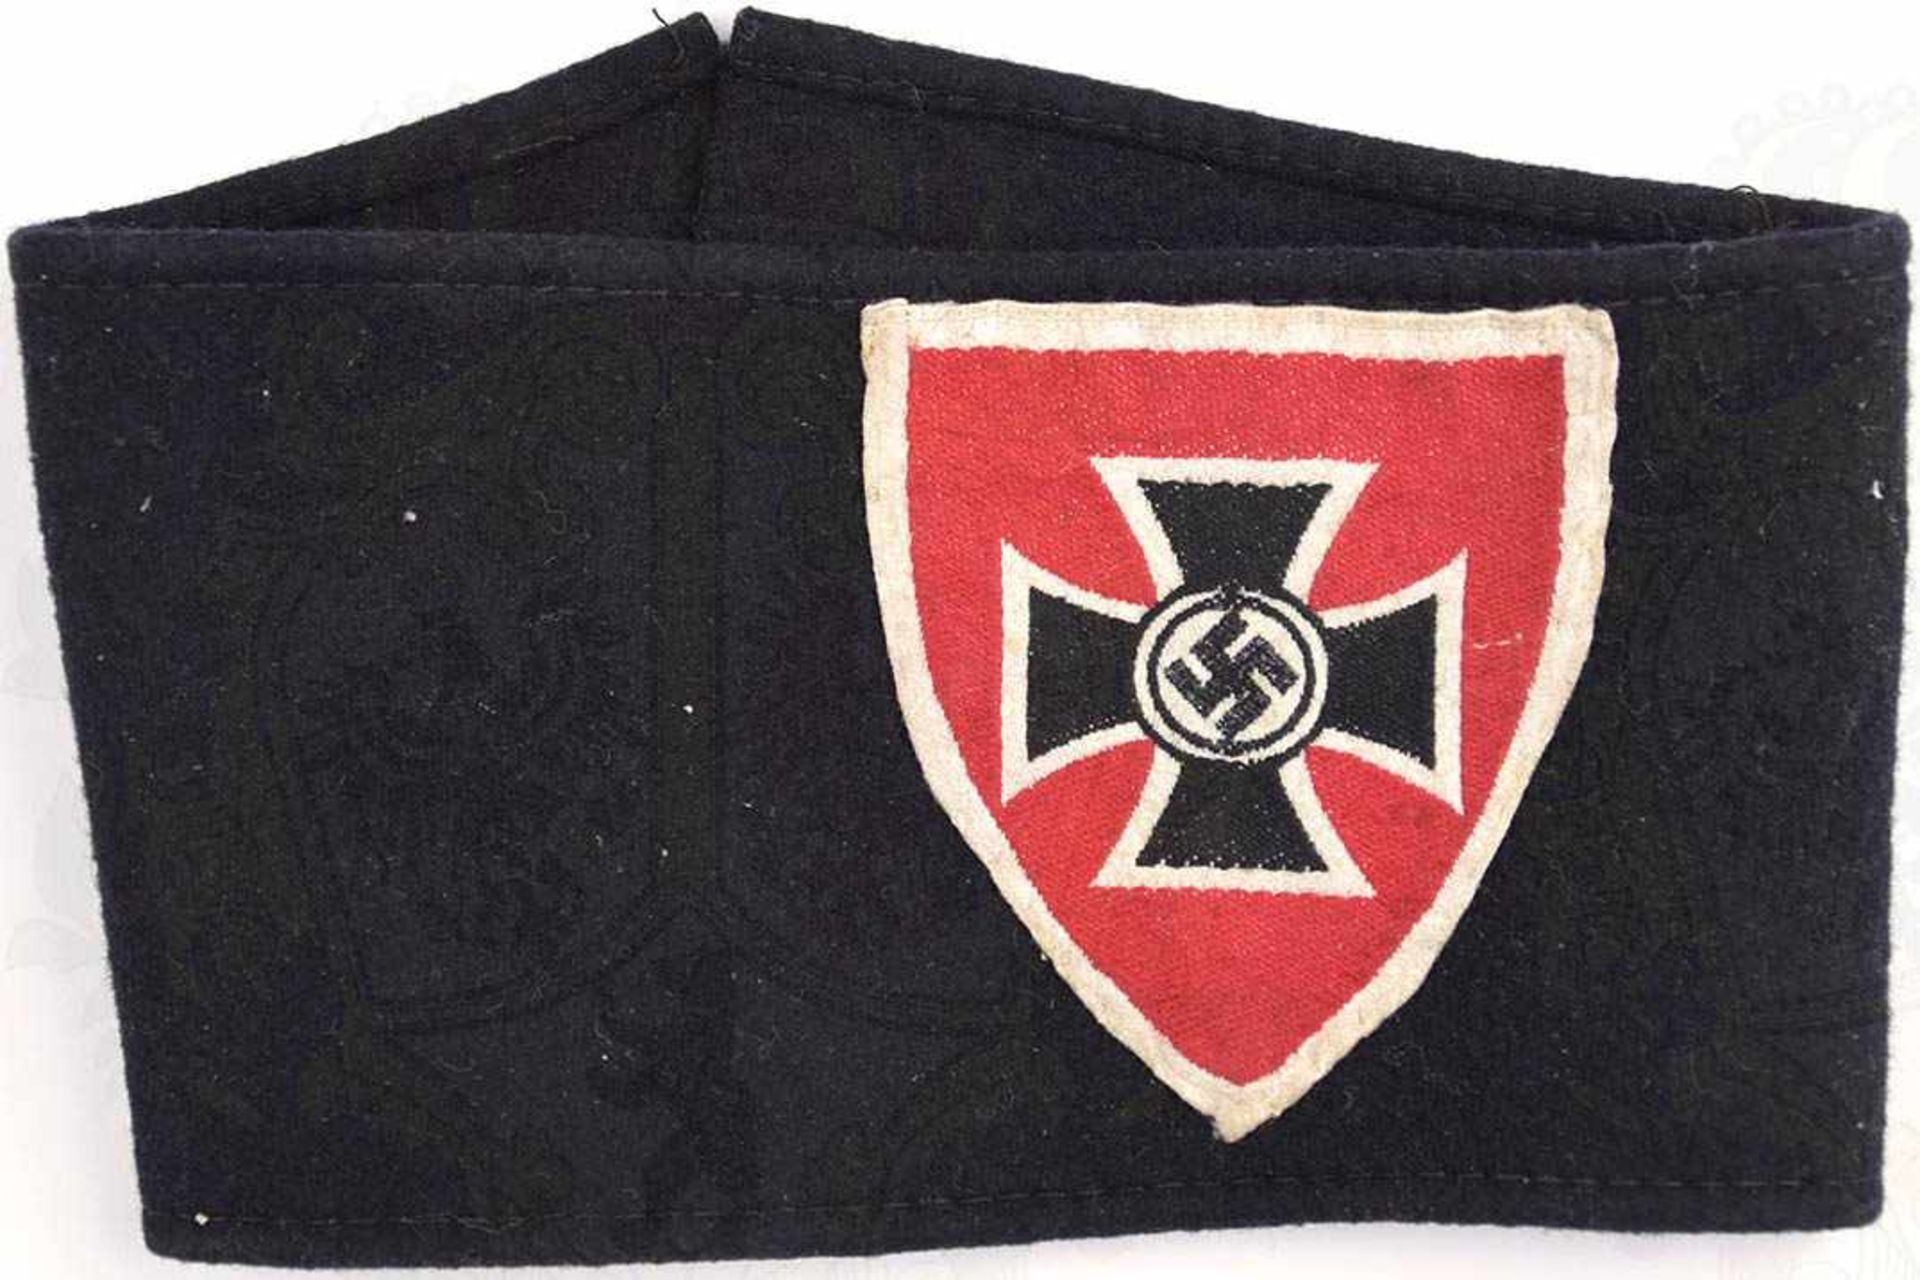 ARMBINDE NS-KRIEGERBUND, Sammleranferigung, farb. gewebtes Wappenschild auf schwarzem Tuch